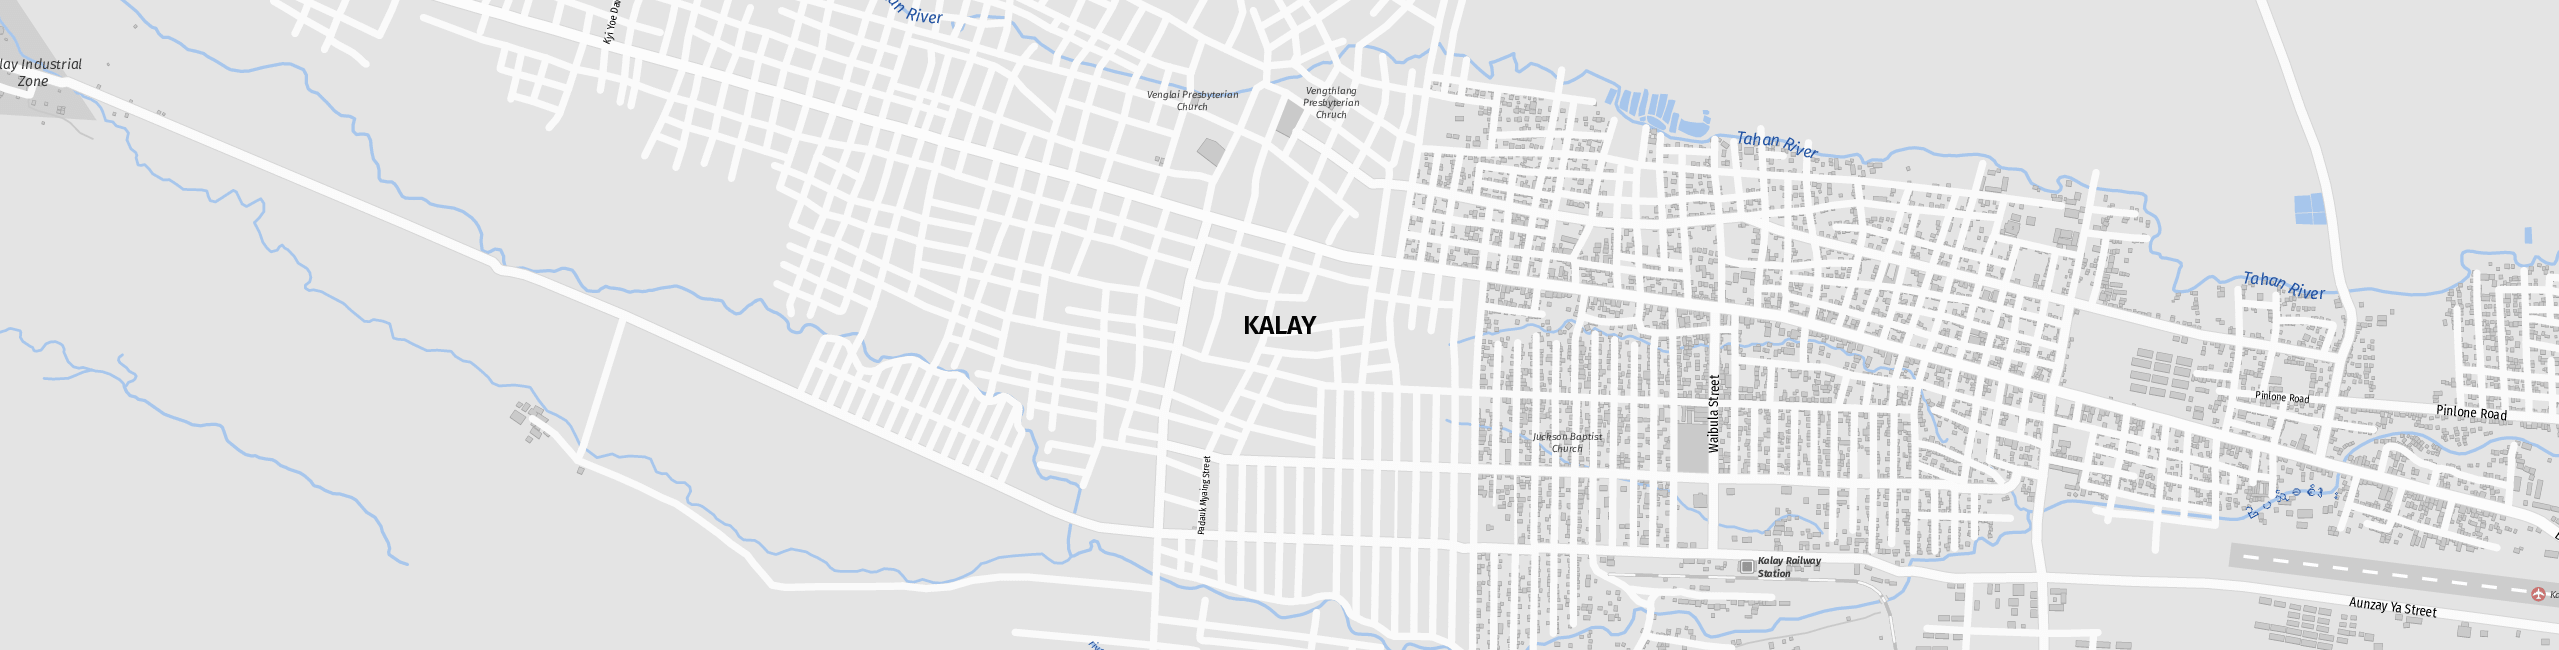 Stadtplan Kalaymyo zum Downloaden.